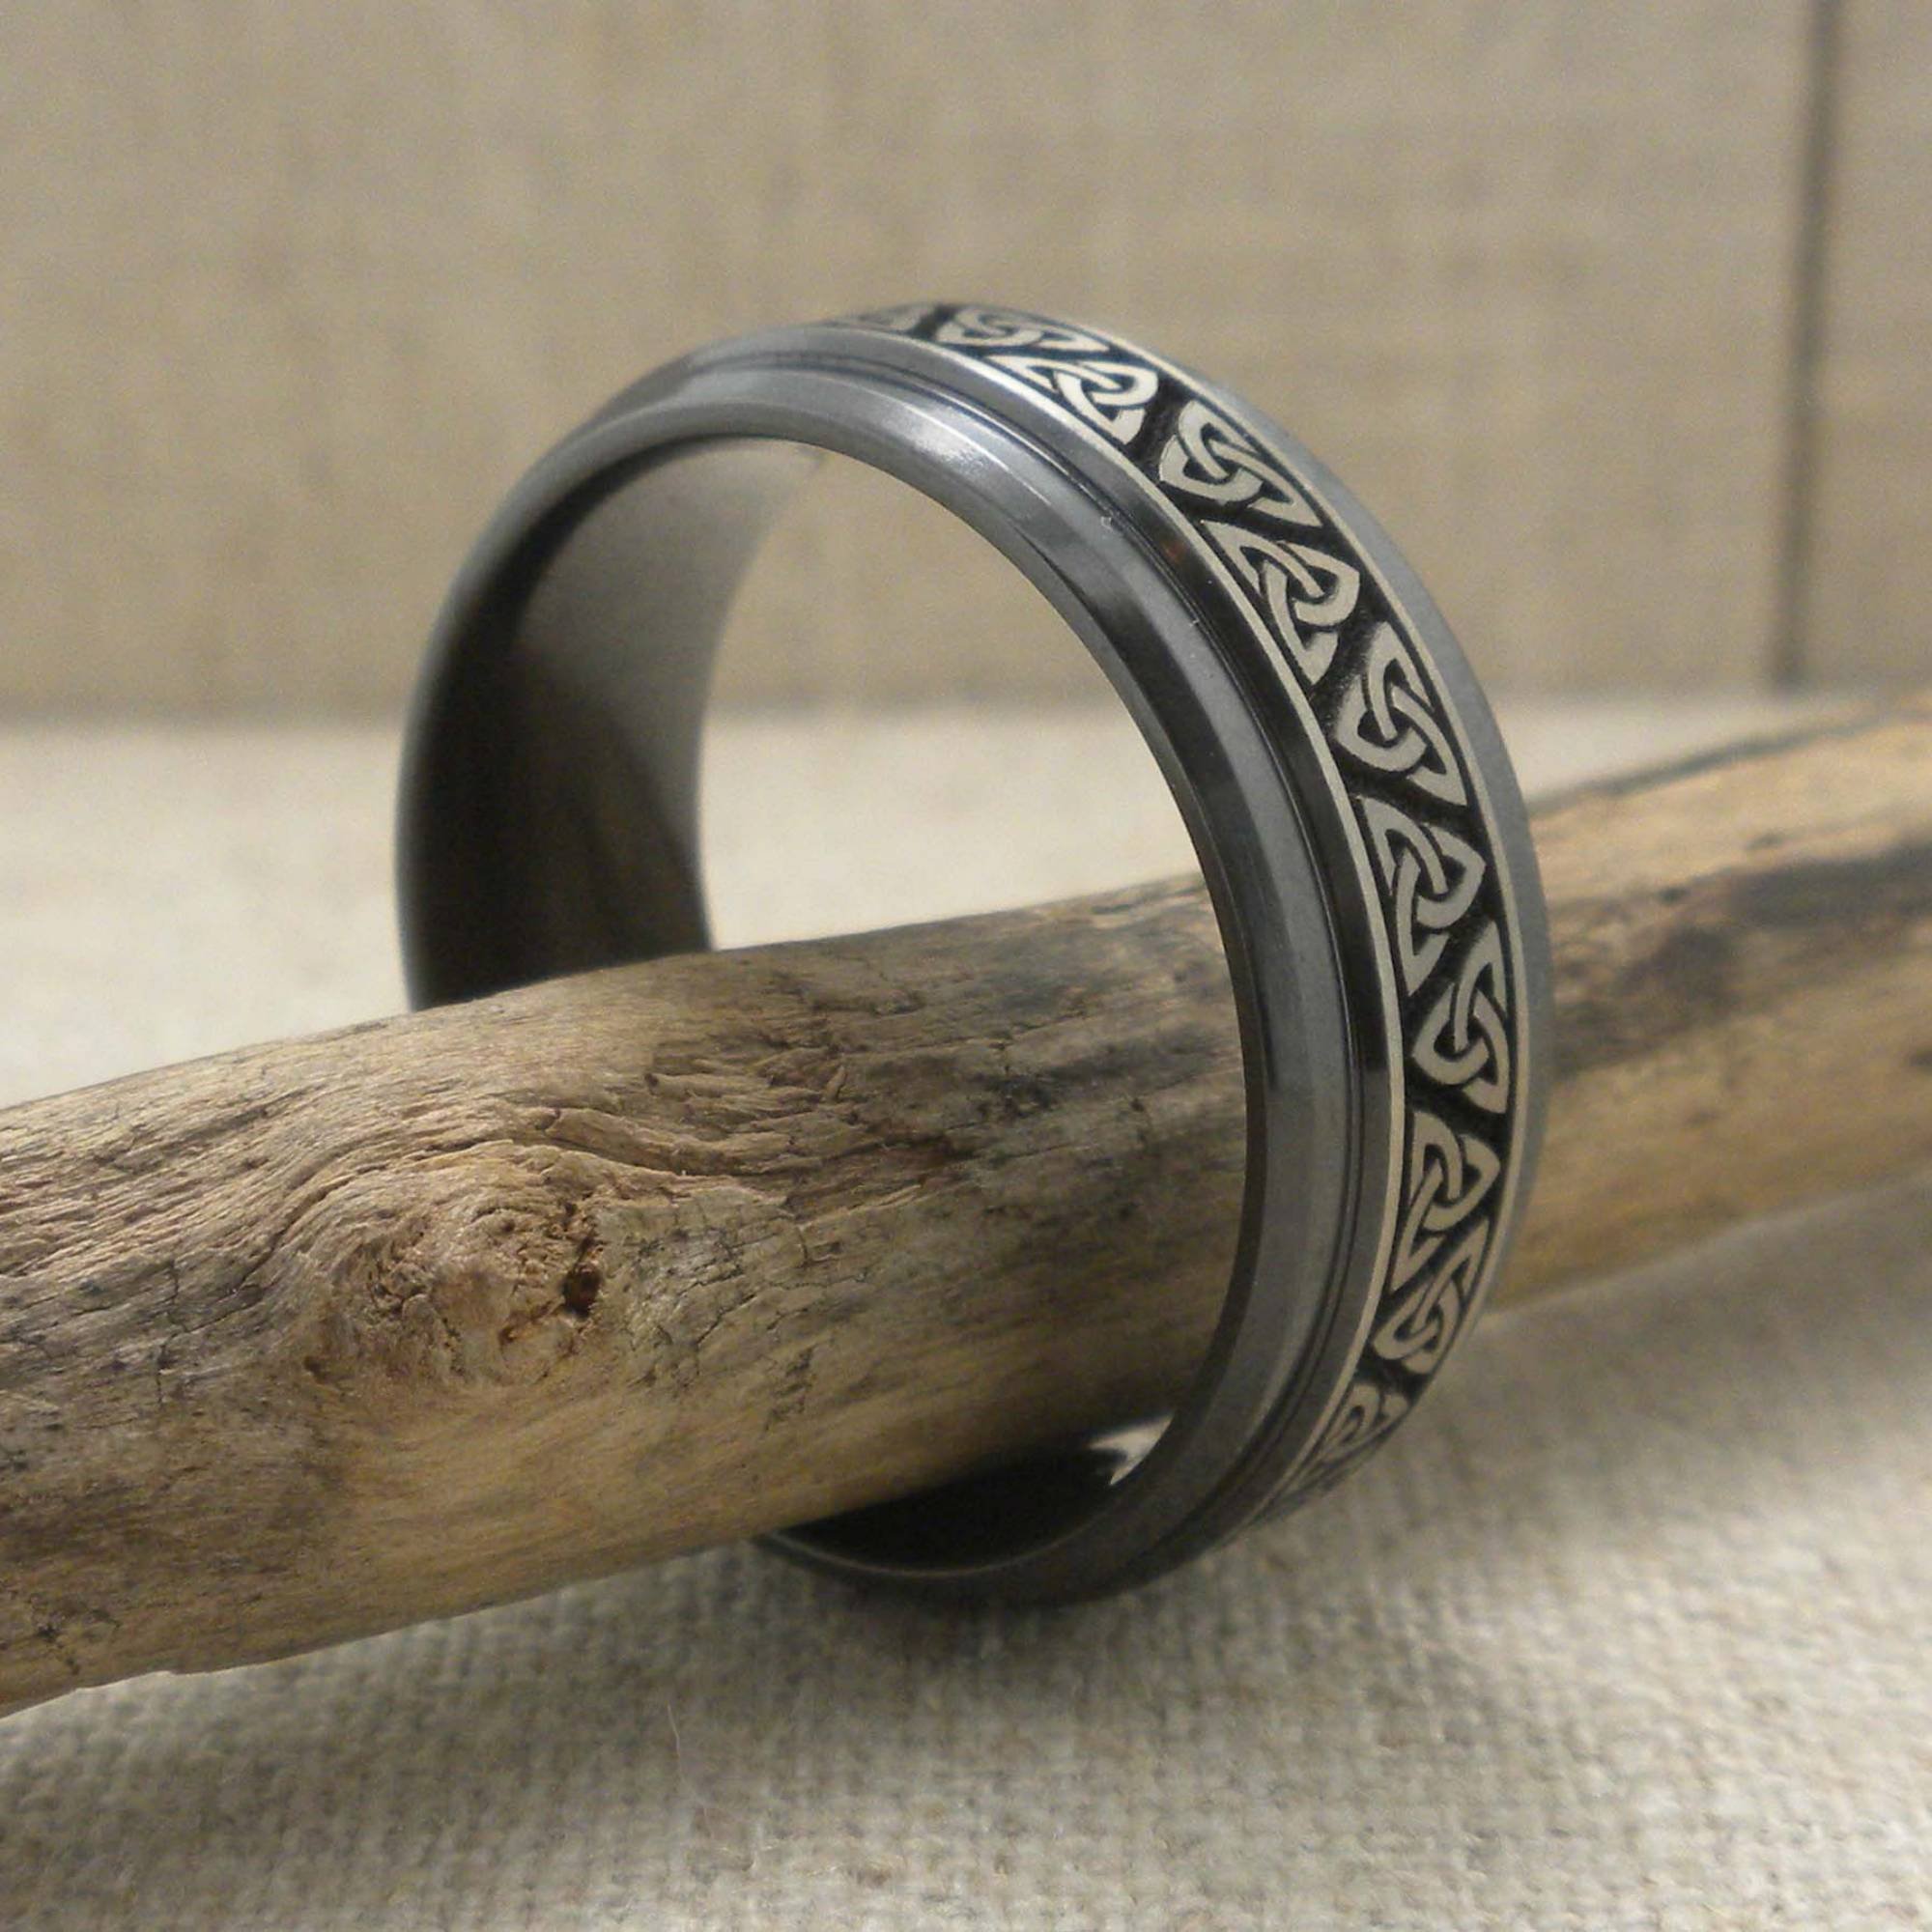 Trinity Knot Wedding Ring in Black Zirconium